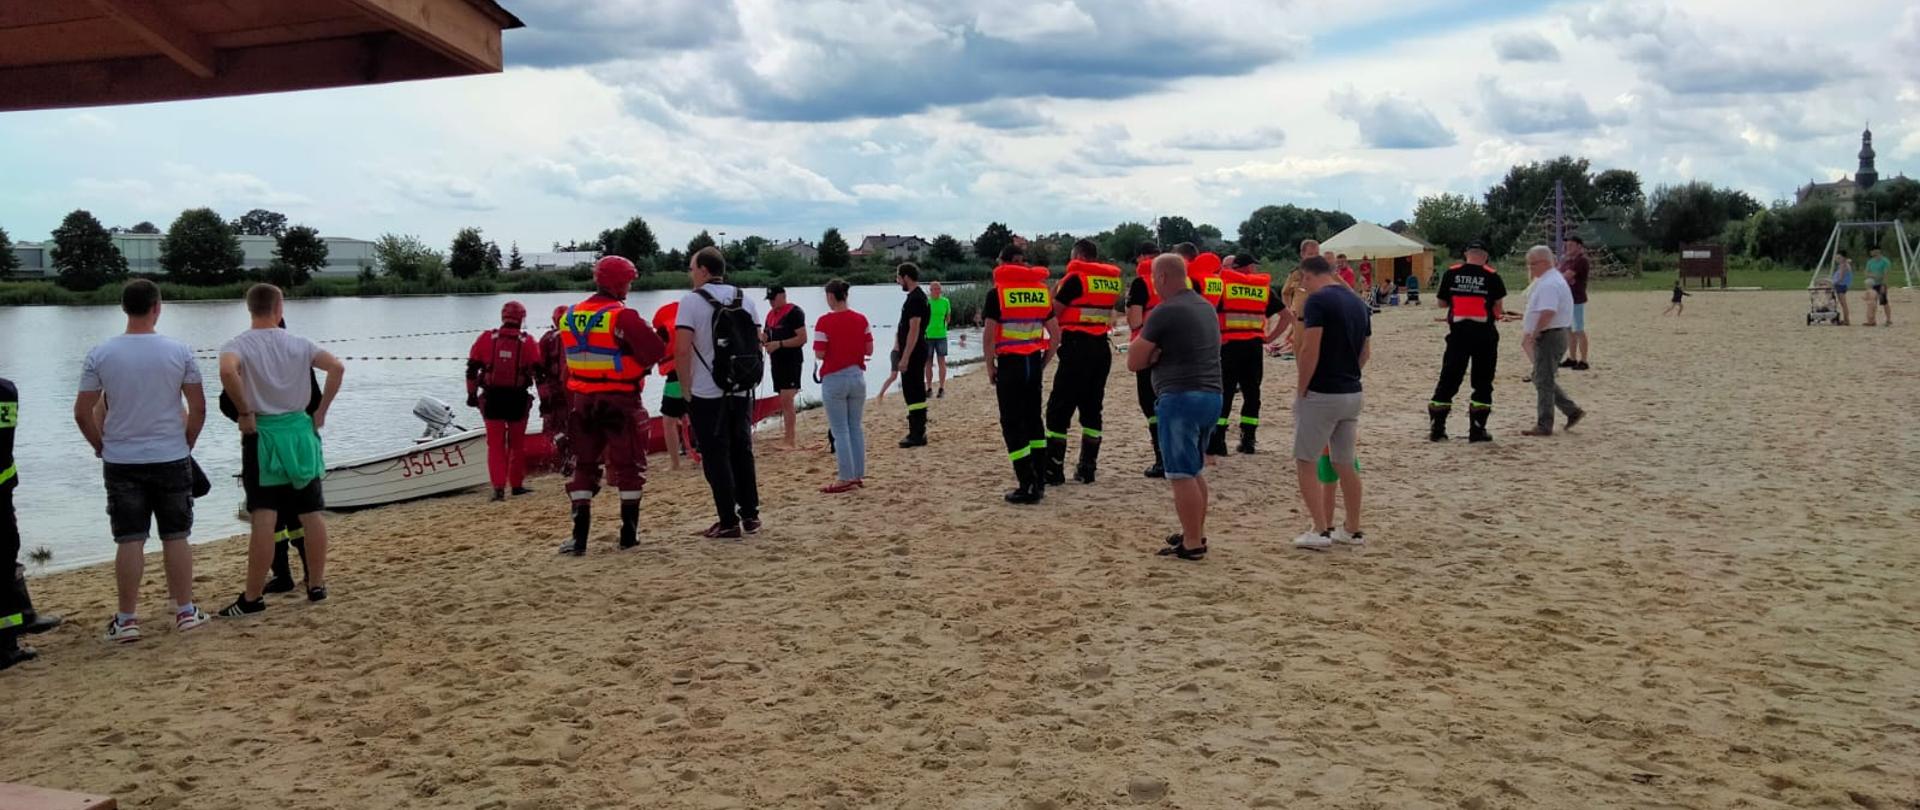  Na zdjęciu plaża i woda. Na plaży stoi wiele osób, wśród nich strażacy biorcy udział w ćwiczeniach z ratownictwa wodnego.